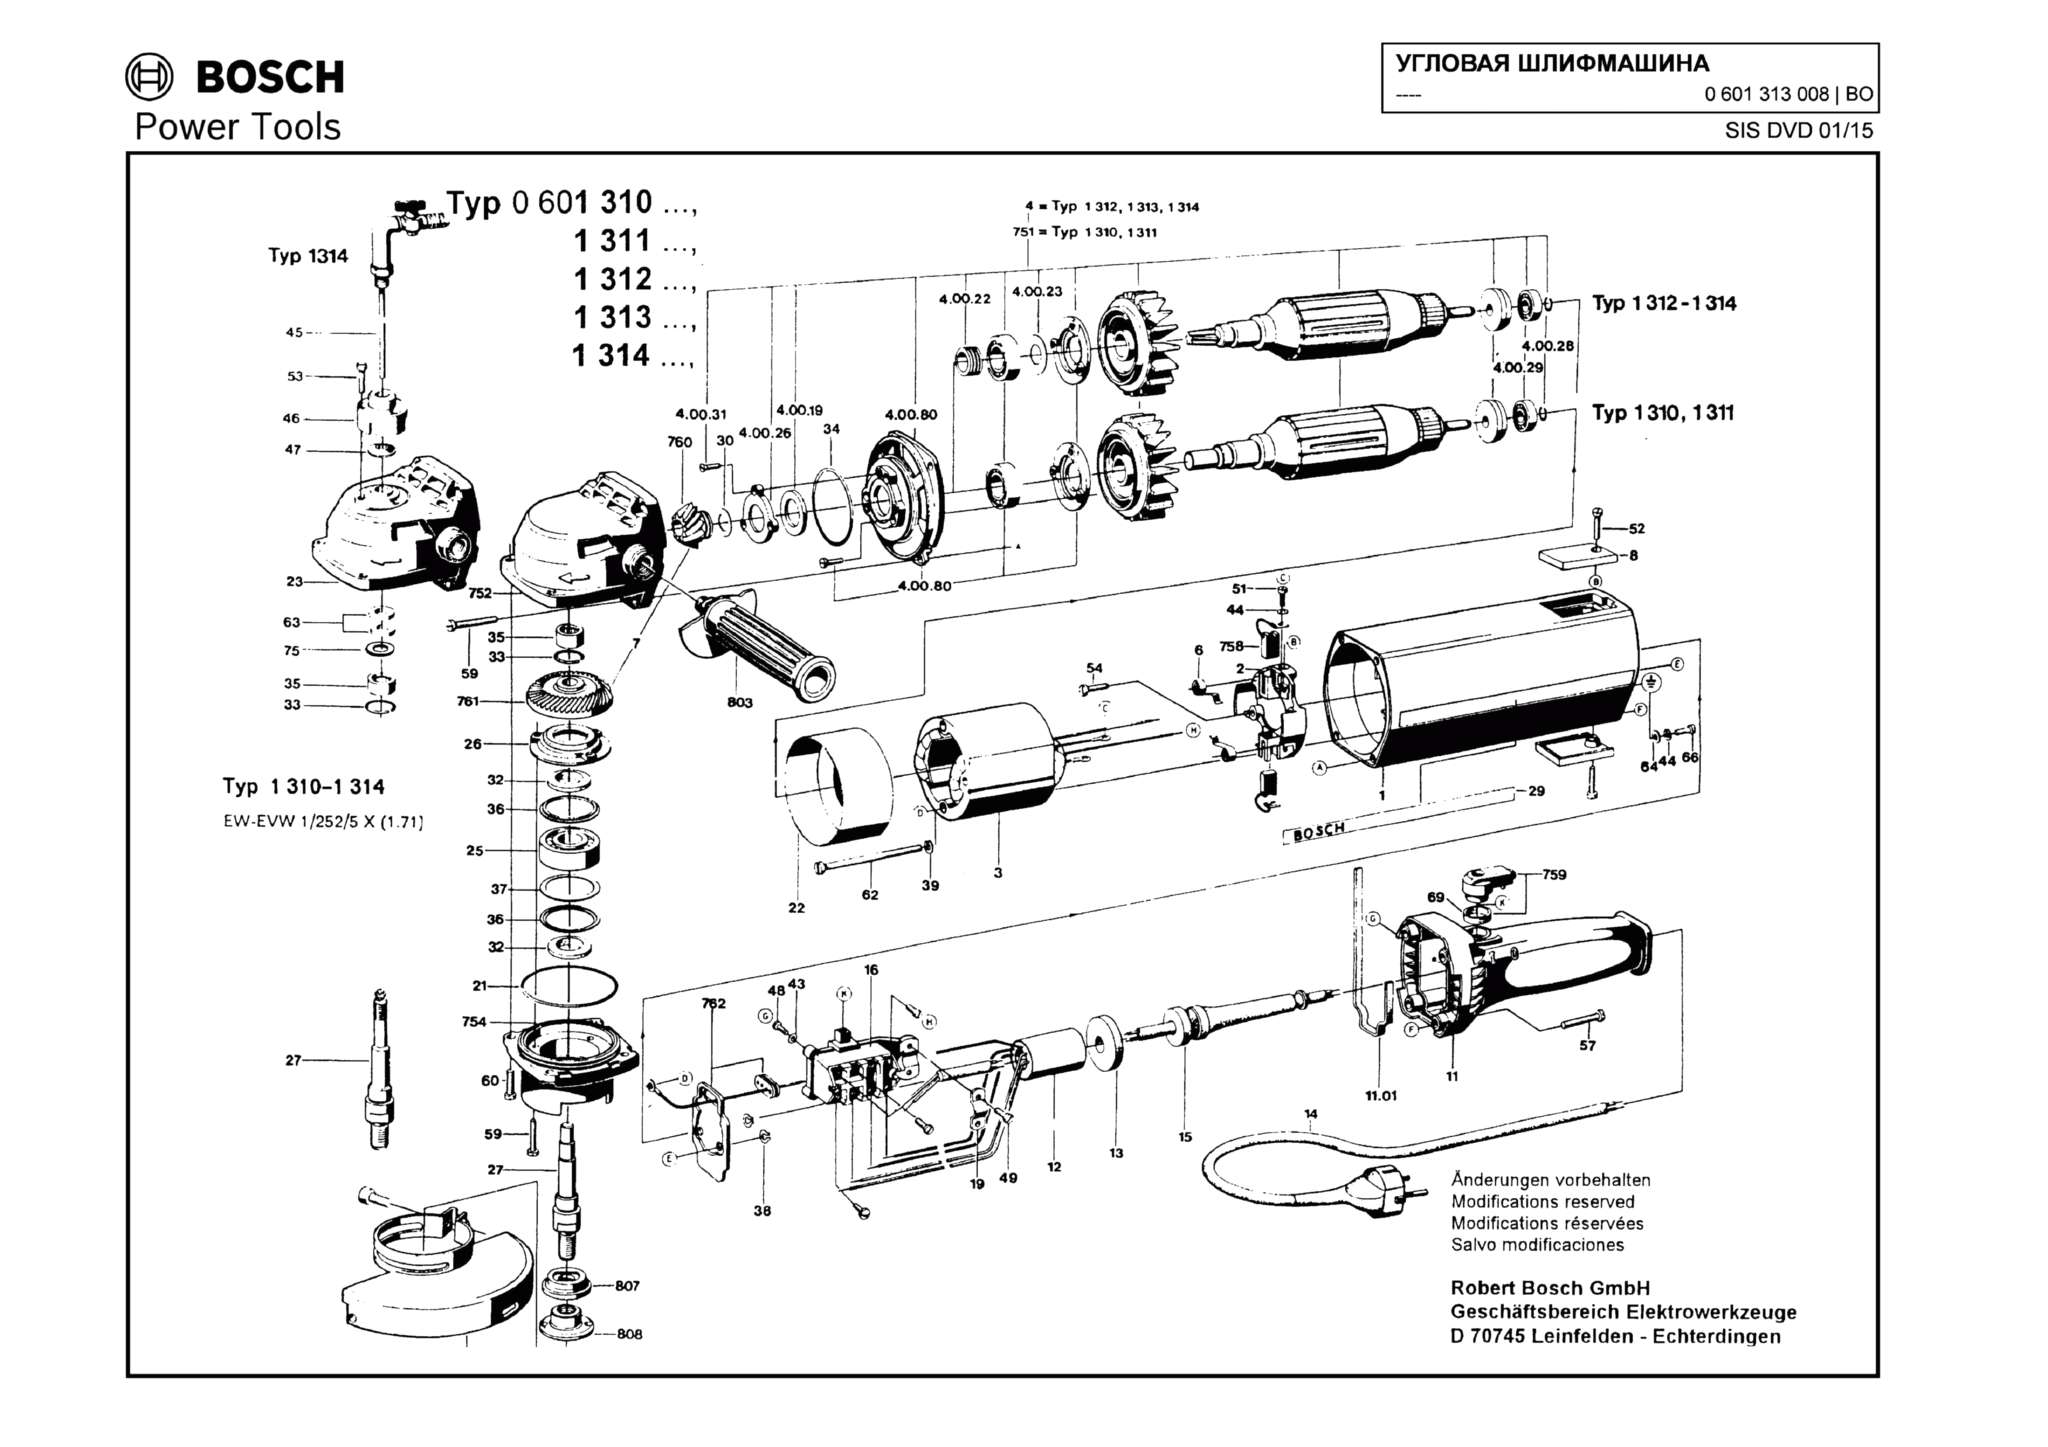 Запчасти, схема и деталировка Bosch (ТИП 0601313008)